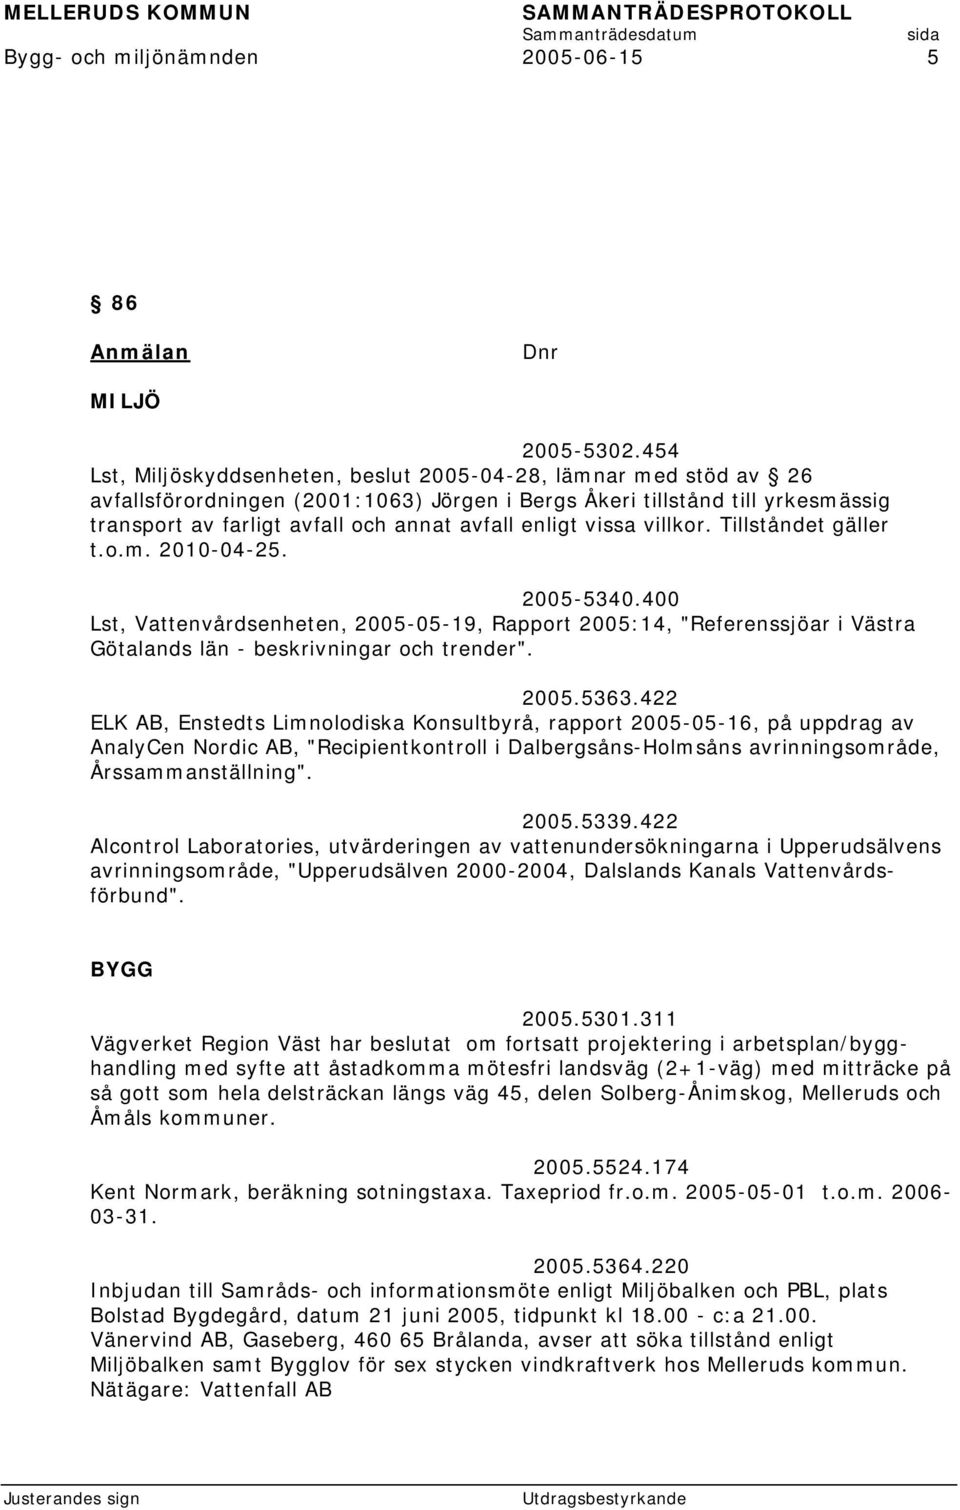 enligt vissa villkor. Tillståndet gäller t.o.m. 2010-04-25. 2005-5340.400 Lst, Vattenvårdsenheten, 2005-05-19, Rapport 2005:14, "Referenssjöar i Västra Götalands län - beskrivningar och trender".